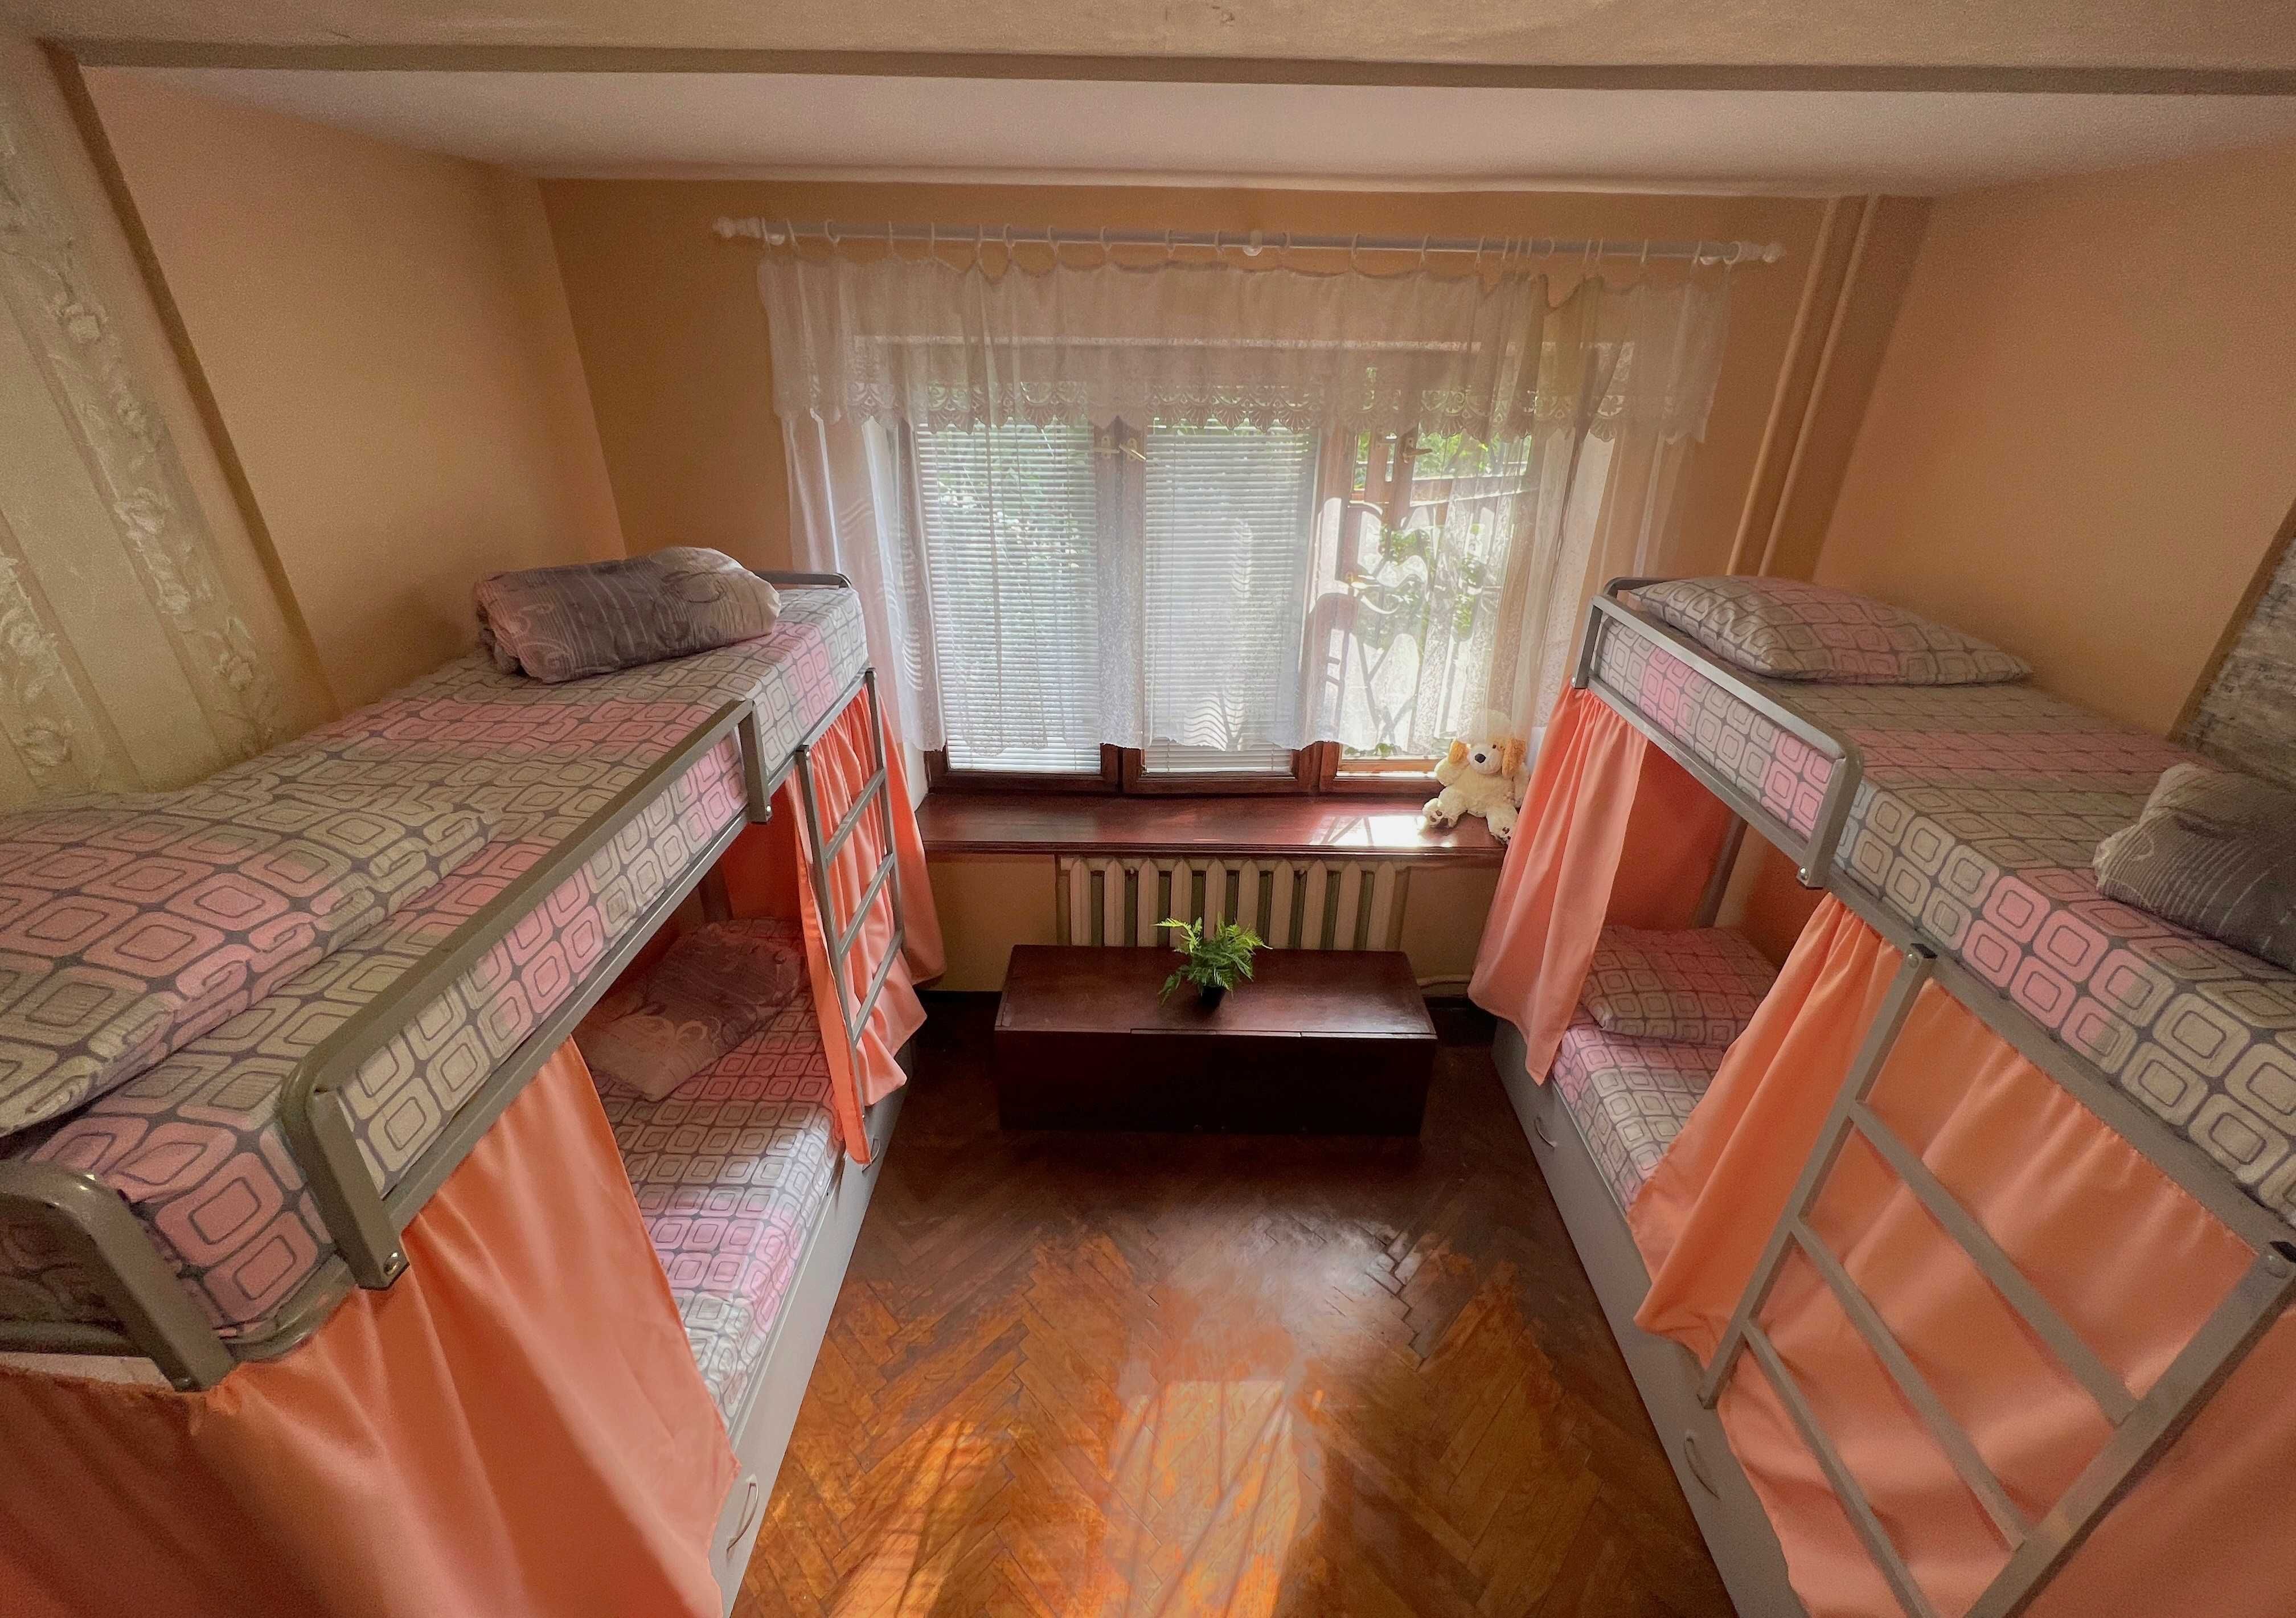 Уютный хостел вблизи Левобережной и Дарницы, Лучшее предложение Киев!